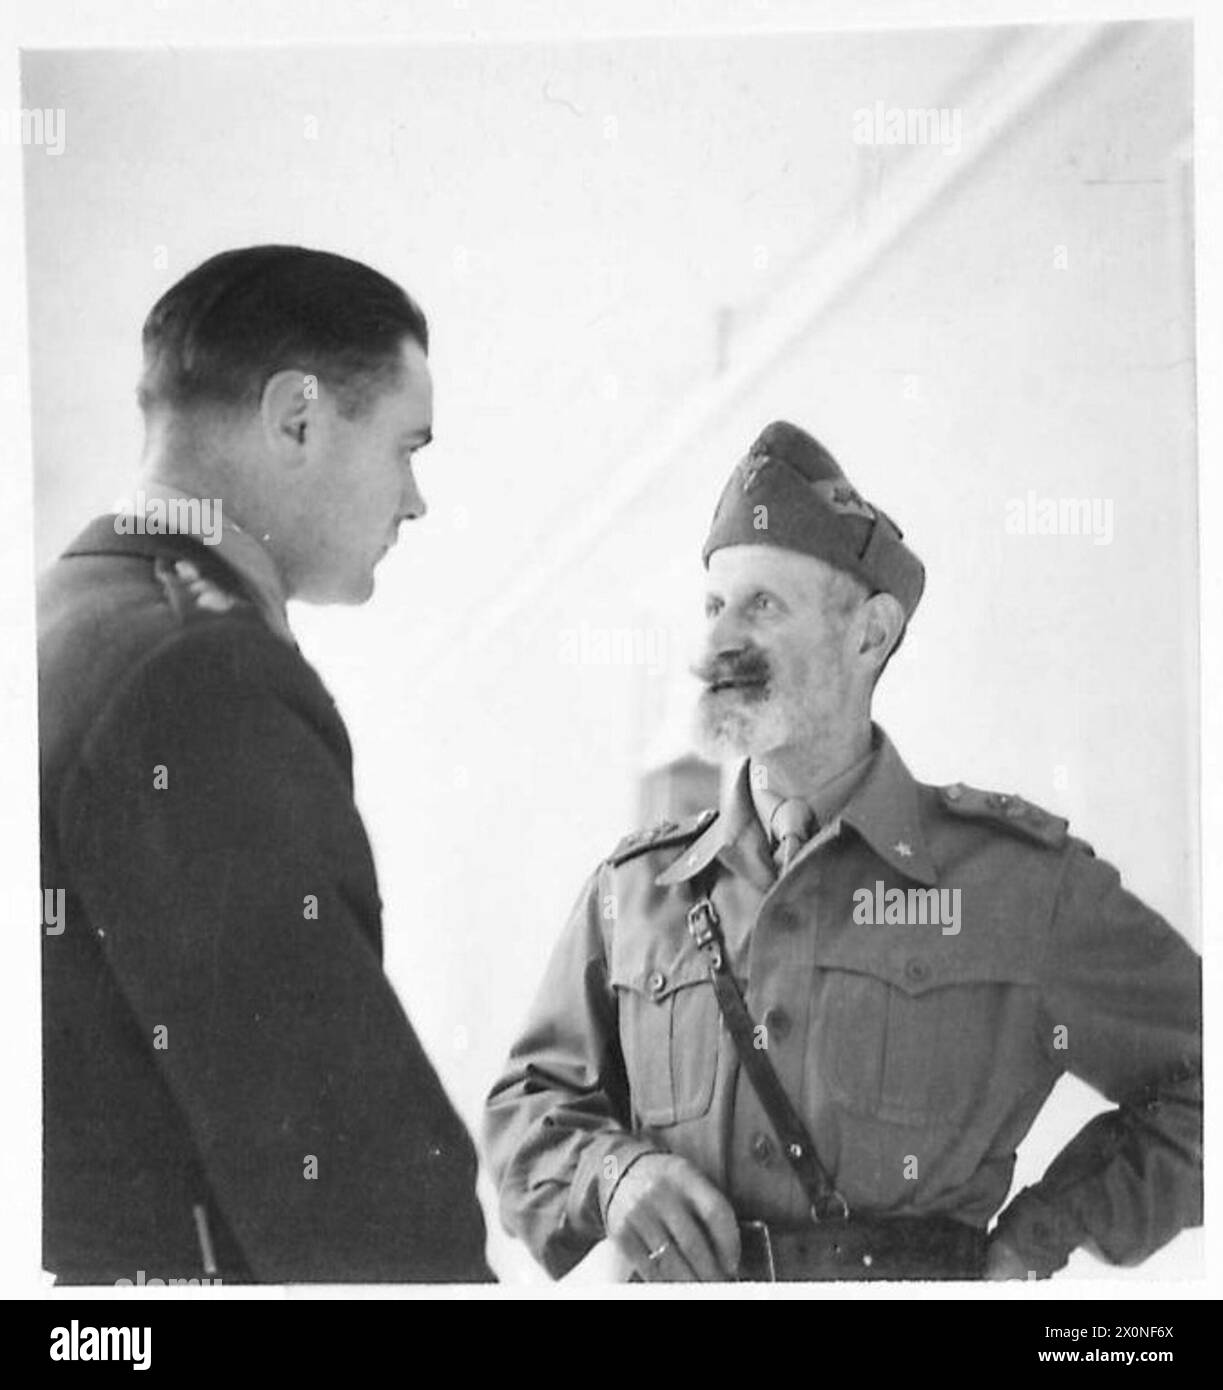 L'ARMÉE BRITANNIQUE EN AFRIQUE DU NORD ET AU MOYEN-ORIENT 1940-1947 - le général discute avec un officier britannique. Négatif photographique, Armée britannique Banque D'Images